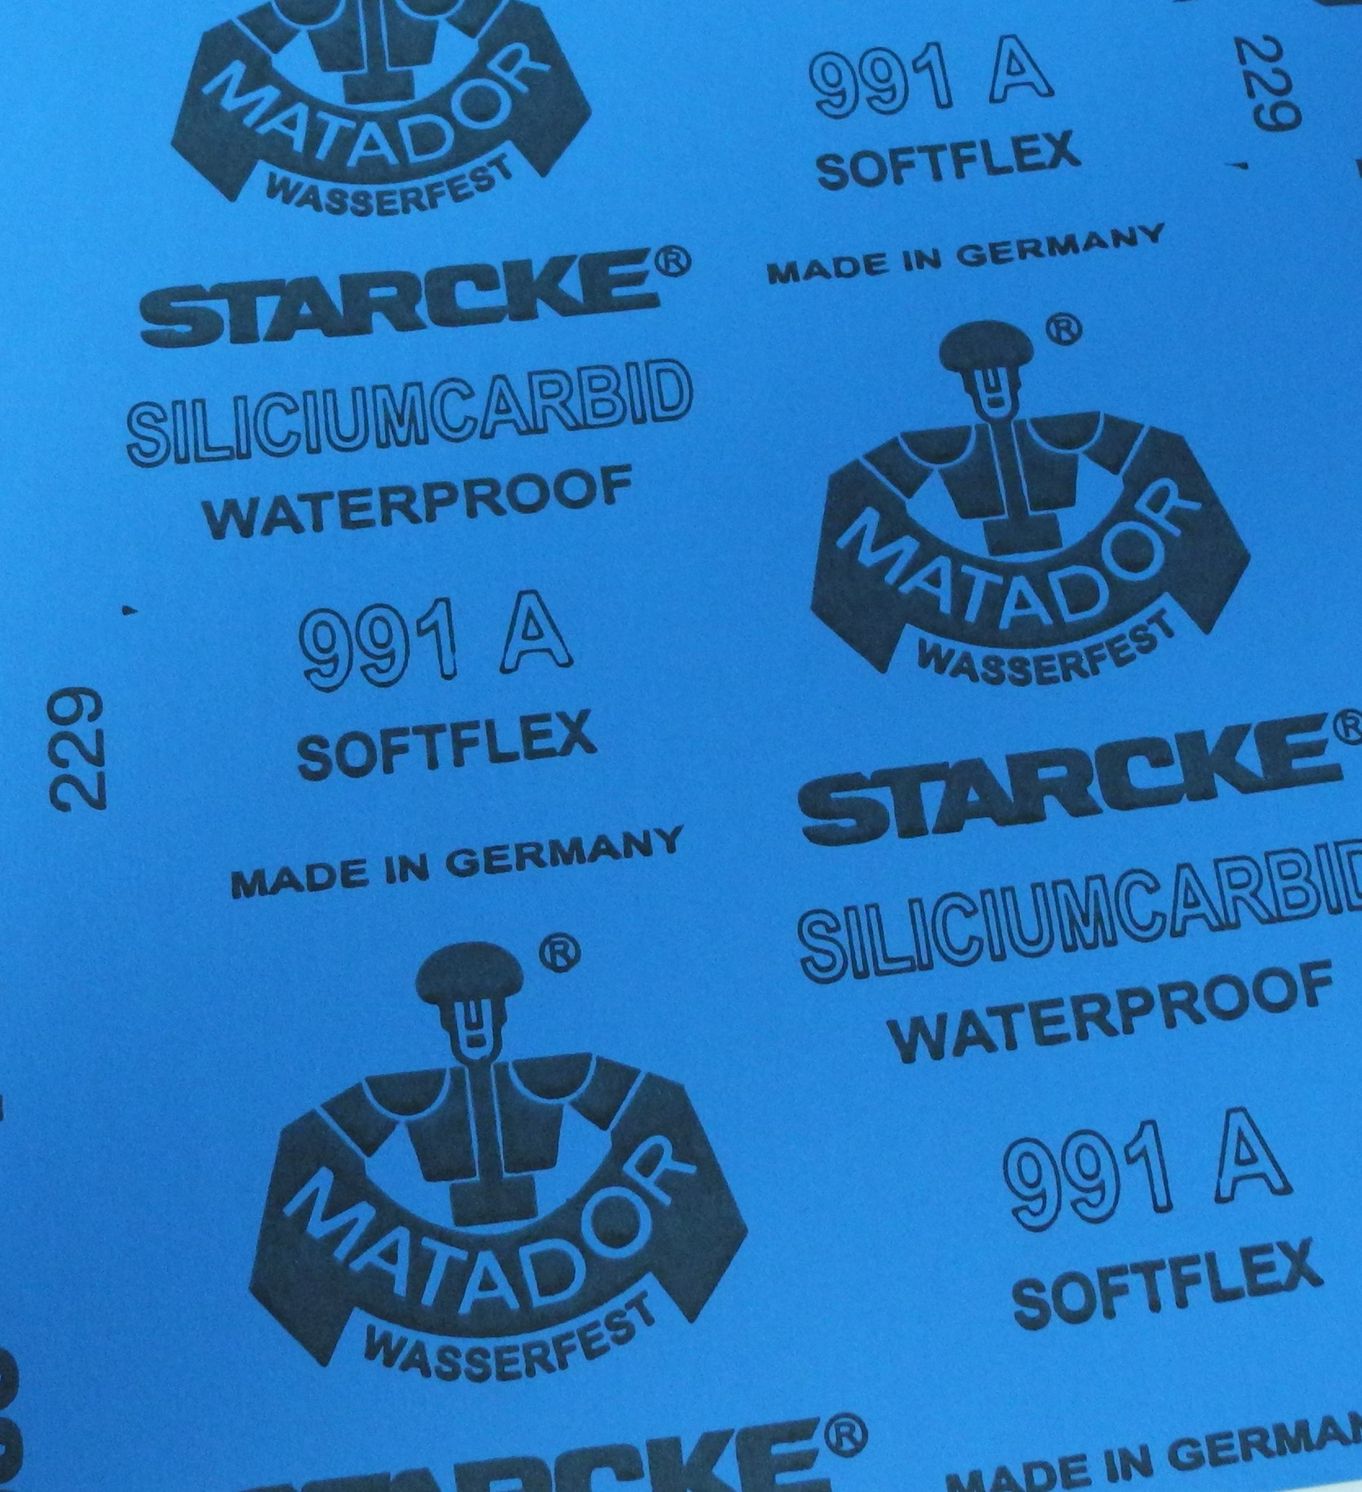 Matador Waterproof Sanding Paper 16 Sheet Assortment 10.0416